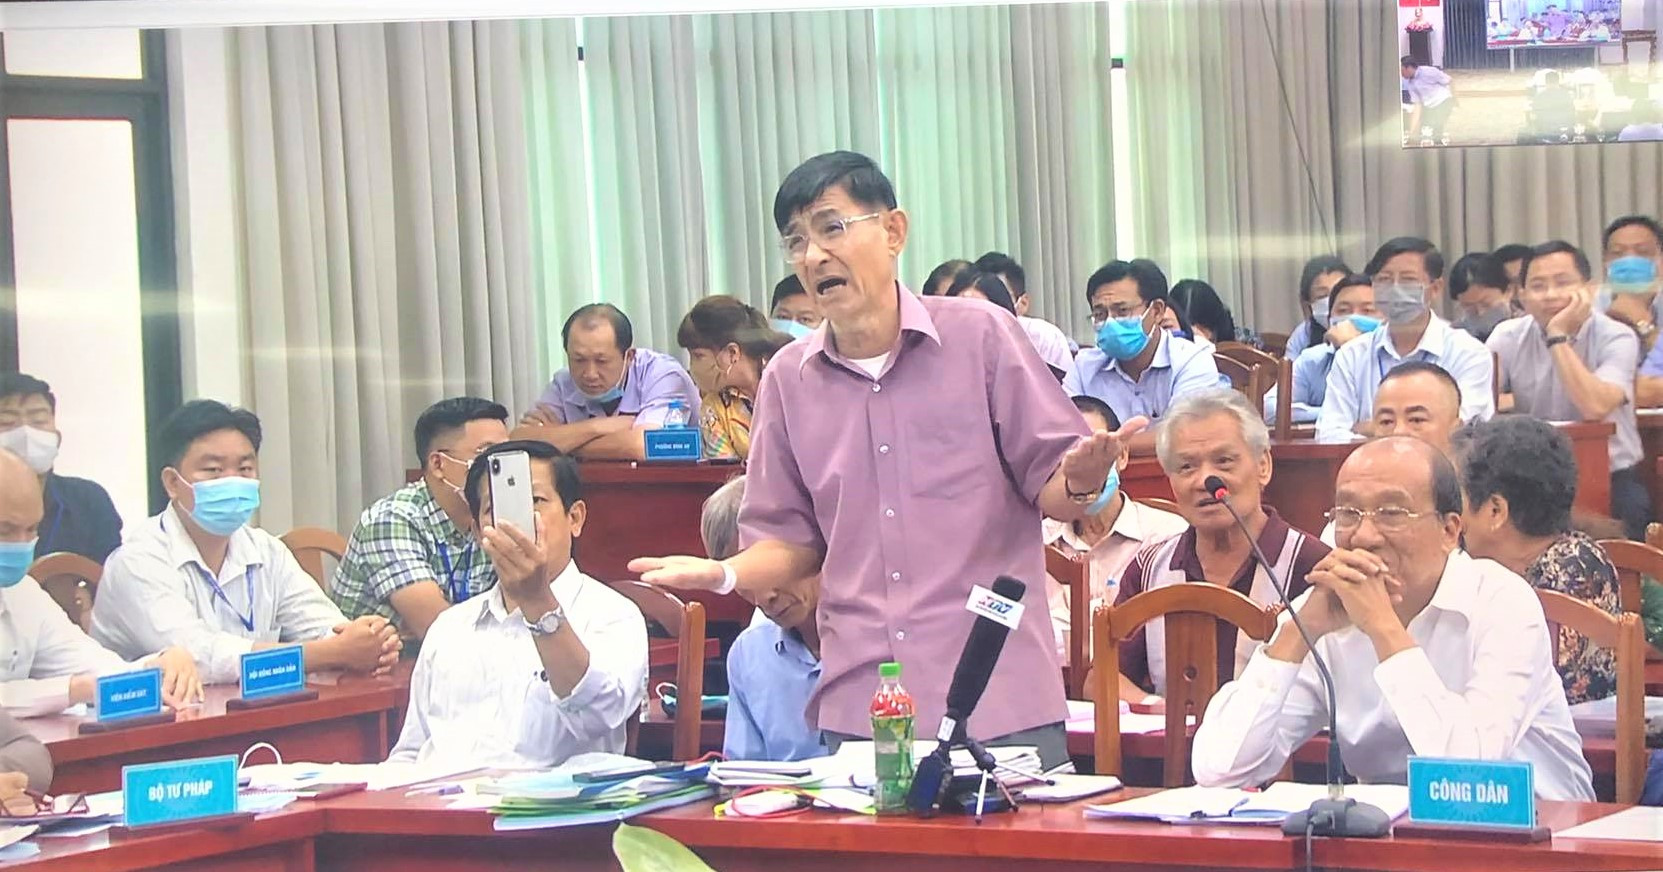 Đại diện hộ dân tại Thủ Thiêm phát biểu tại một buổi đối thoại với lãnh đạo UBND TP HCM (Ảnh: Hồng Phúc).